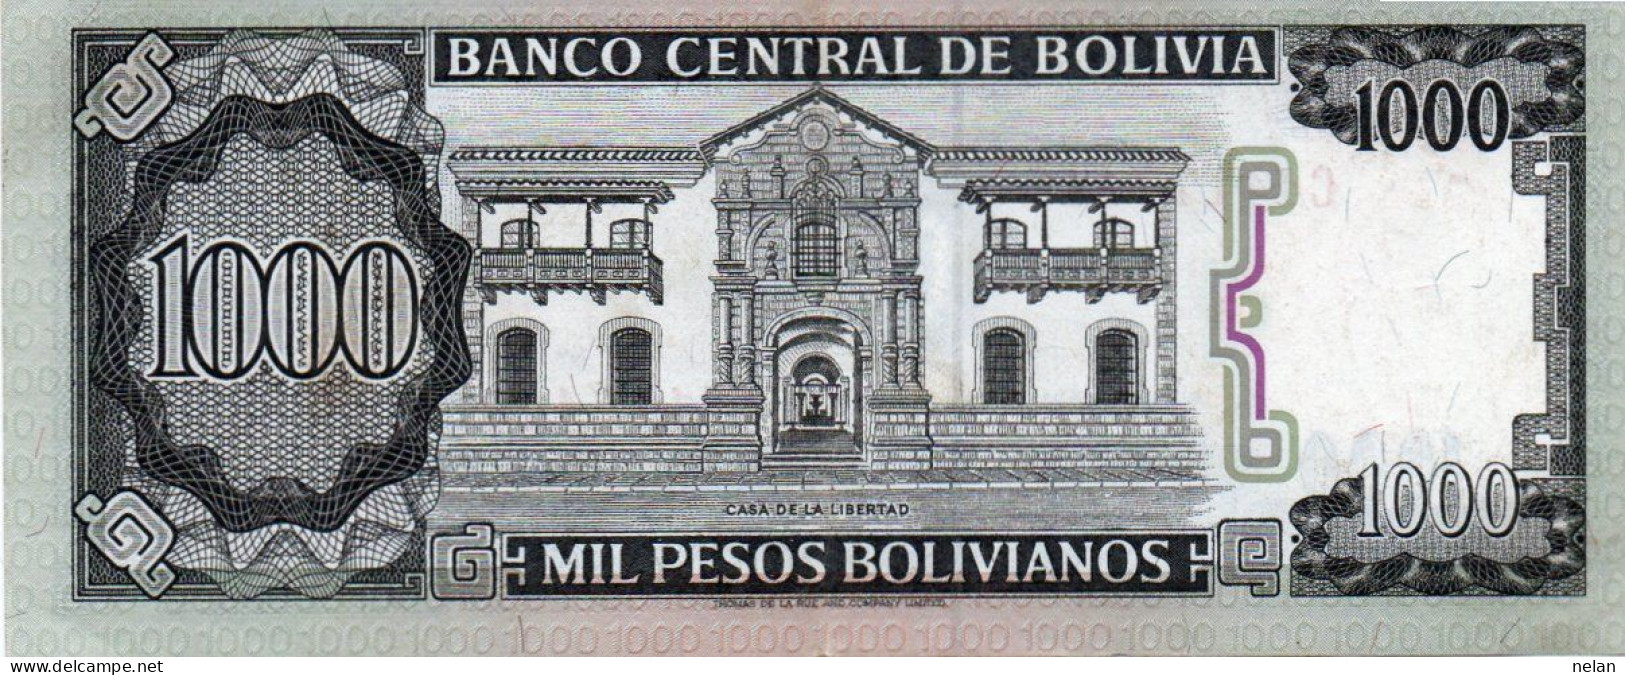 BOLIVIA 1000 BOLIVIANOS 1982 P-167a.3.2 XF++AUNC - Bolivie